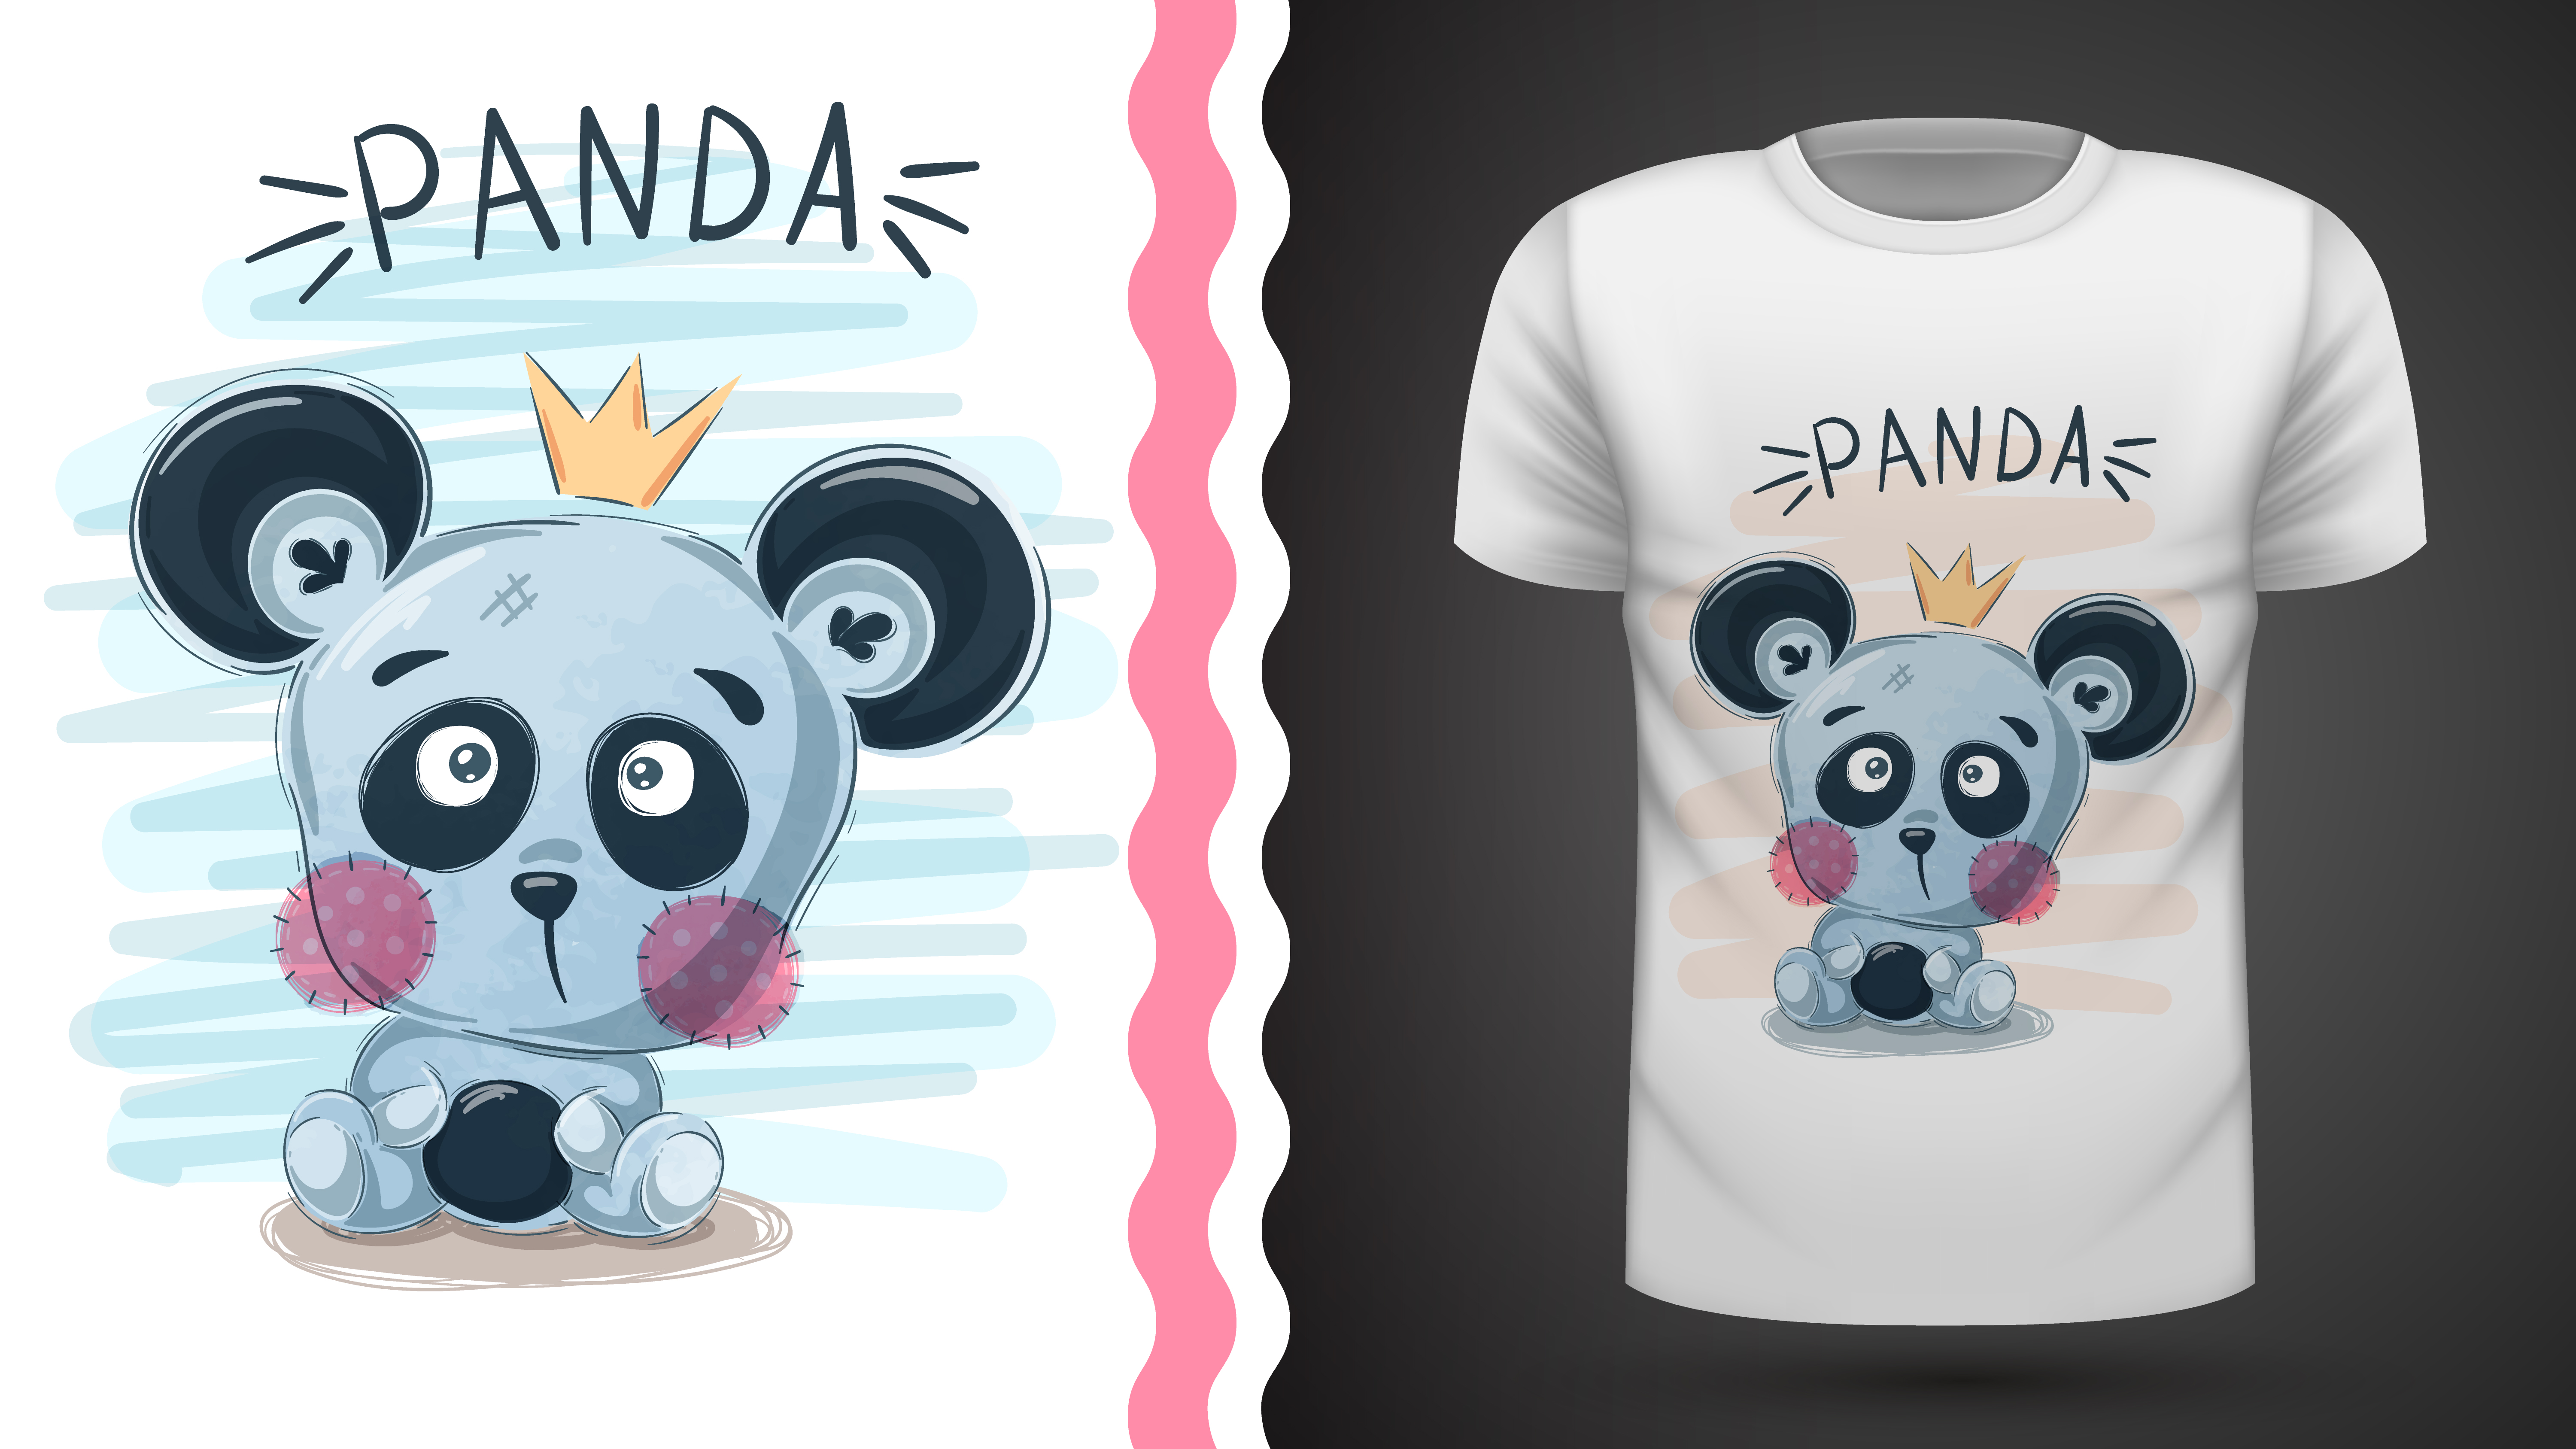 Panda Mignon Idee Pour Imprimer Telecharger Vectoriel Gratuit Clipart Graphique Vecteur Dessins Et Pictogramme Gratuit